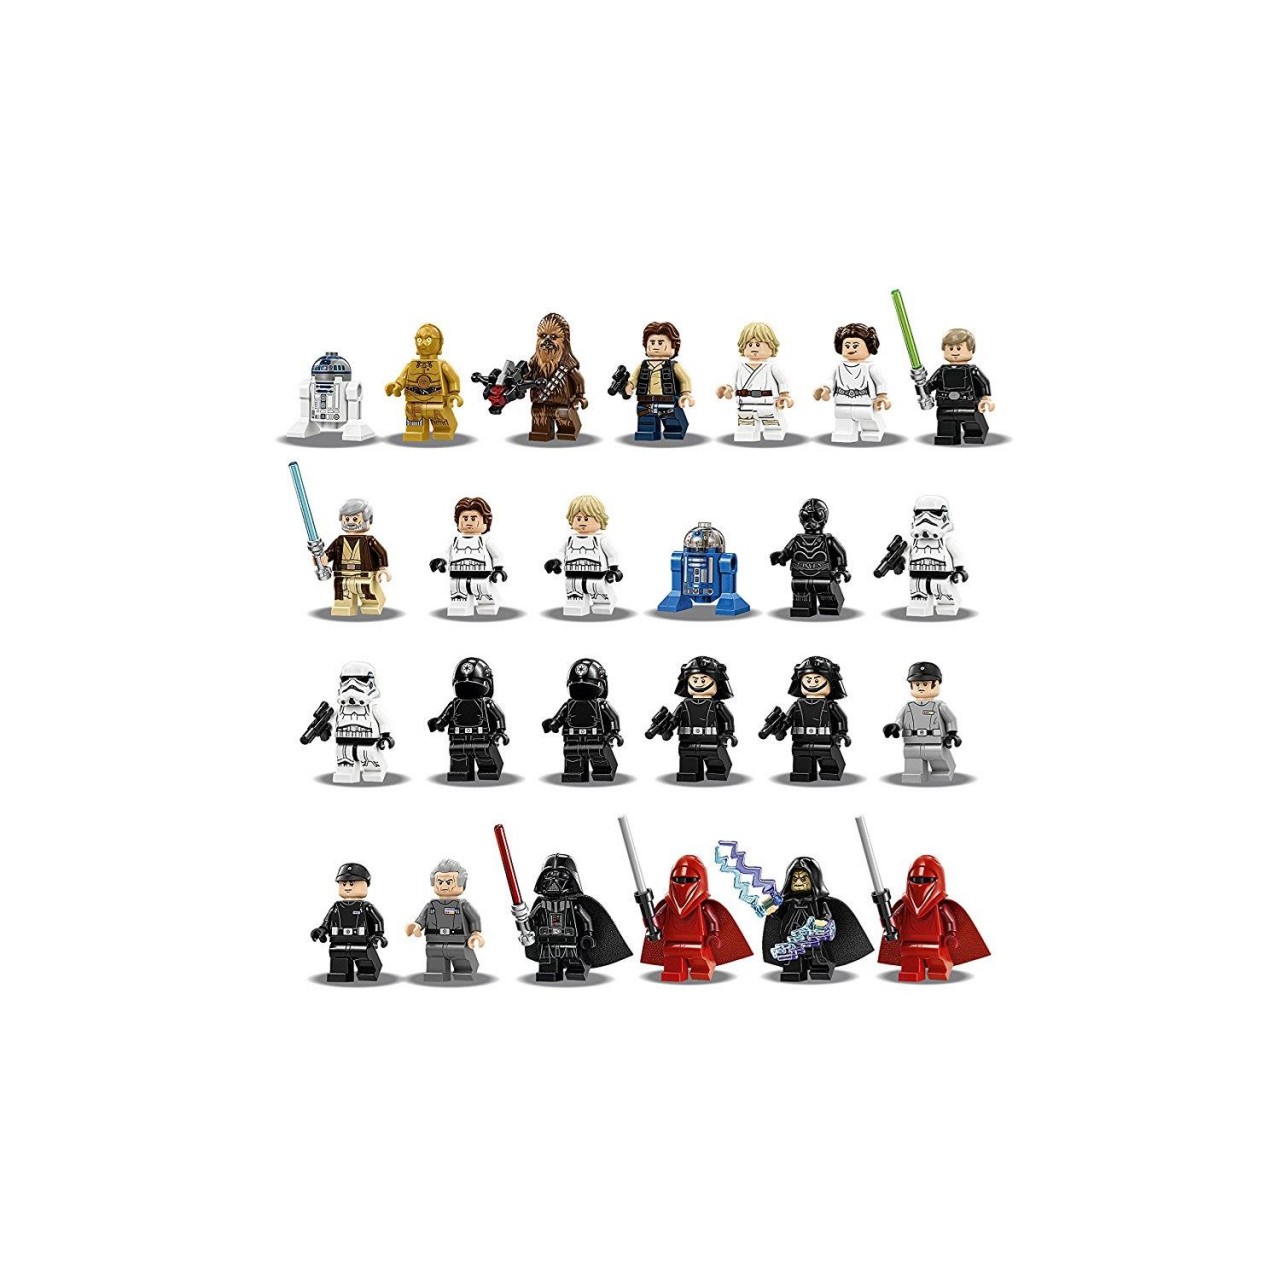 LEGO STAR WARS 75159 Death Star